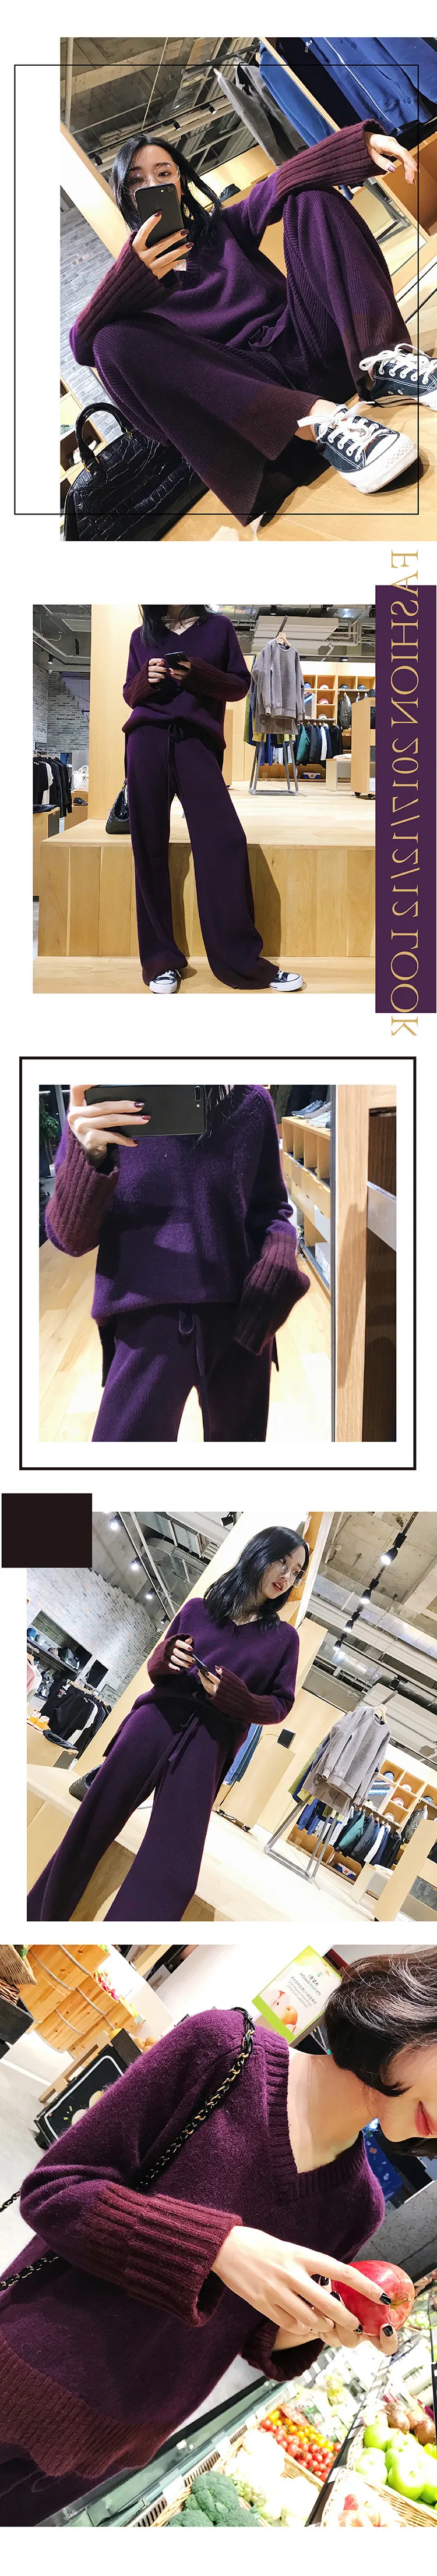 2018 прямые продажи полный Новинка зимы кашемира вязать костюм женский Цвет соответствующие Свитер с V-образным вырезом широкие штаны